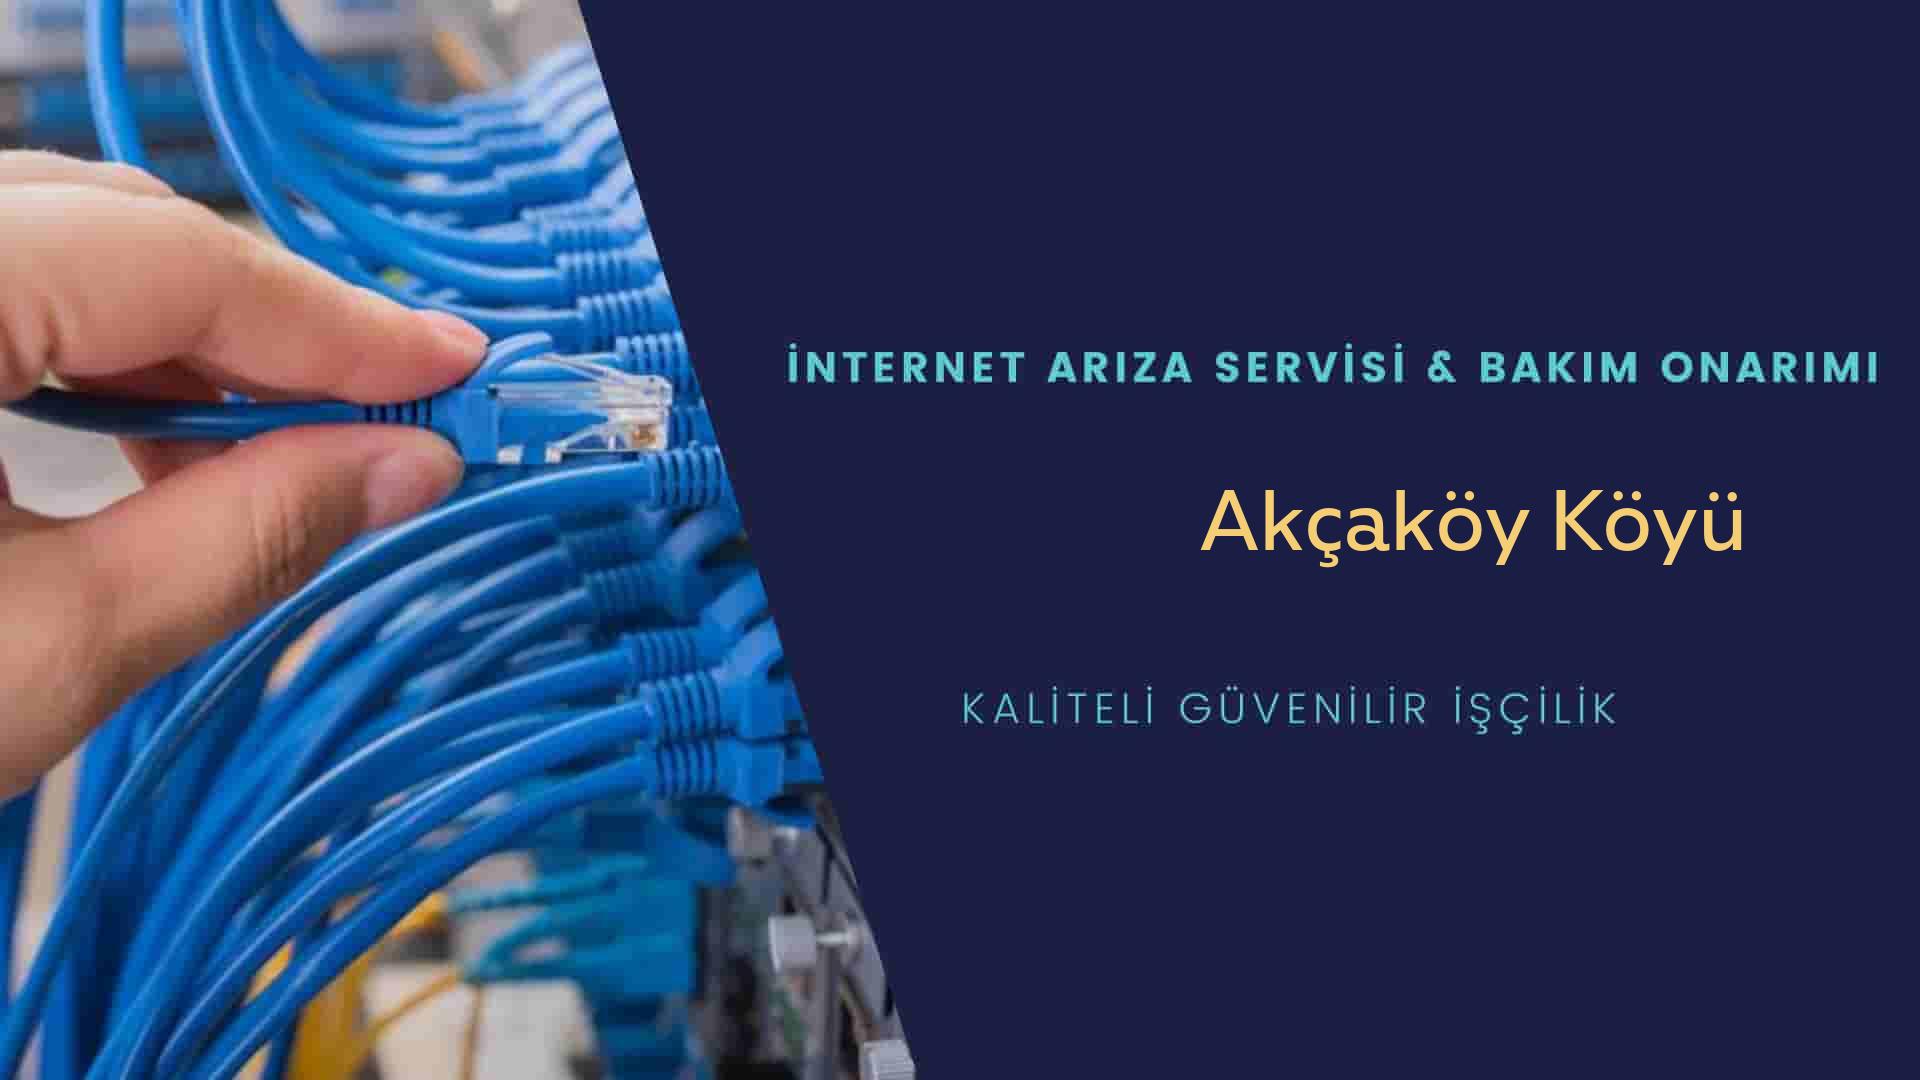 Akcaköy Köyü internet kablosu çekimi yapan yerler veya elektrikçiler mi? arıyorsunuz doğru yerdesiniz o zaman sizlere 7/24 yardımcı olacak profesyonel ustalarımız bir telefon kadar yakındır size.